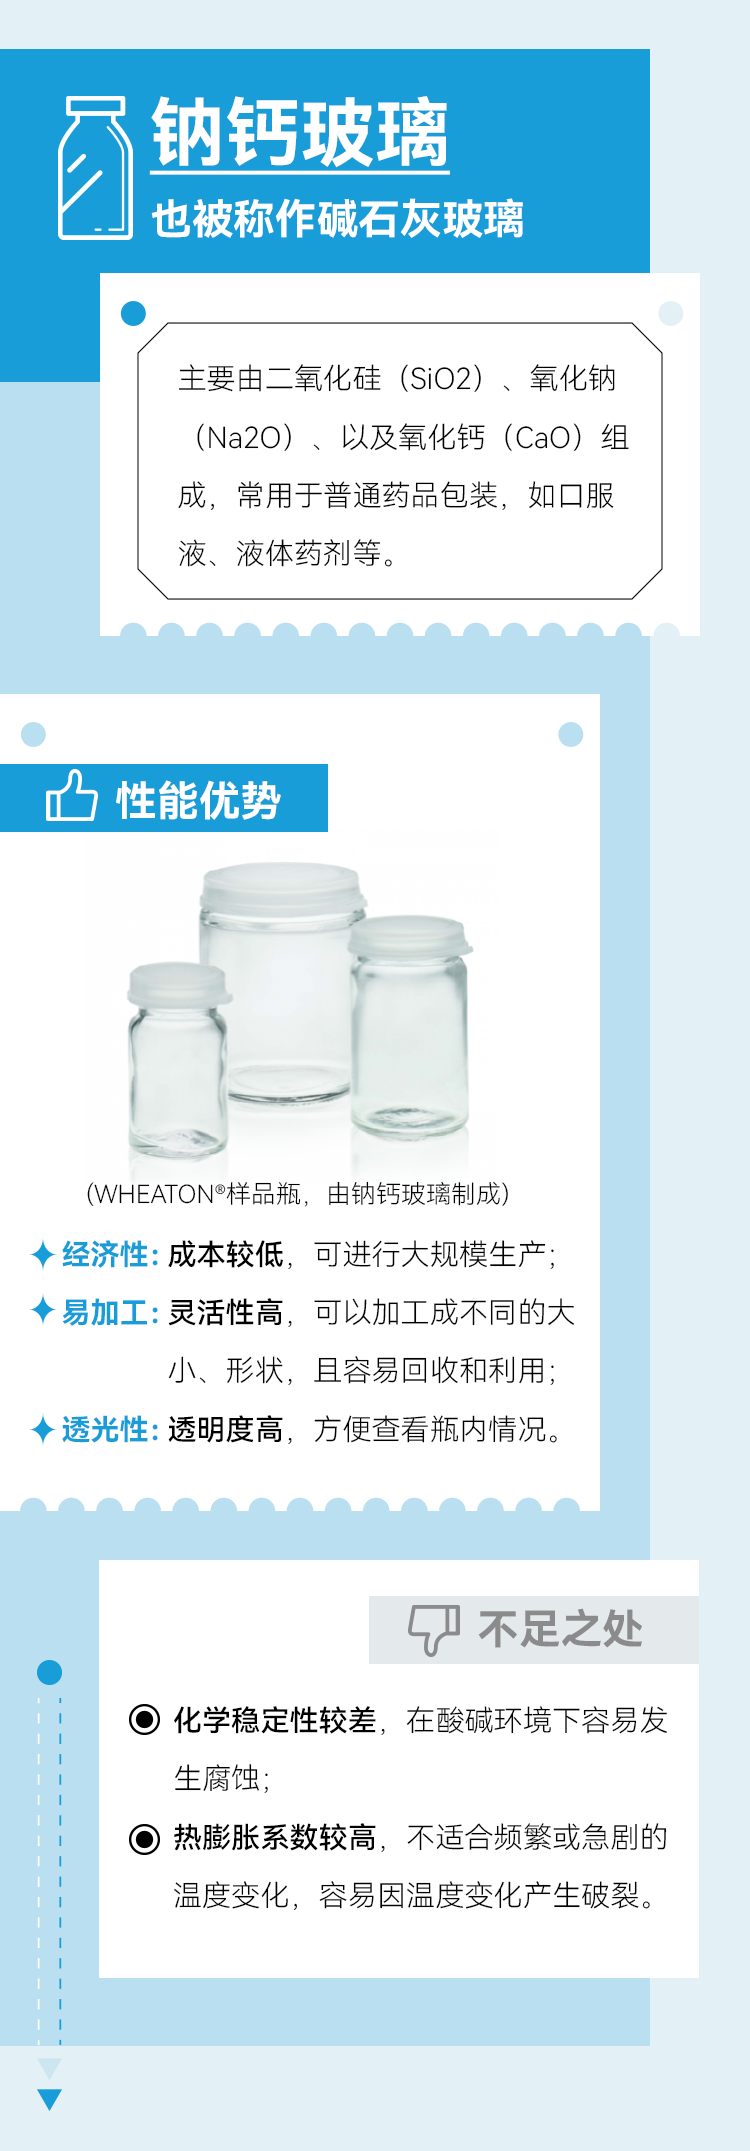 钠钙玻璃也被称作碱石灰玻璃
主要由二氧化硅 (SiO2)、氧化钠(Na2O) 、以及氧化钙 (CaO) 组成，常用于普通药品包装，如口服液、液体药剂等。
性能优势
(WHEATON®️样品瓶，由钠钙玻璃制成)
经济性: 成本较低，可进行大规模生产；
易加工: 灵活性高，可以加工成不同的大小、形状，且容易回收和利用；
透光性: 透明度高，方便查看瓶内情况；
不足之处
化学稳定性较差，在酸碱环境下容易发生腐蚀；
热膨胀系数较高，不适合频繁或急剧的温度变化，容易因温度变化产生破裂。
